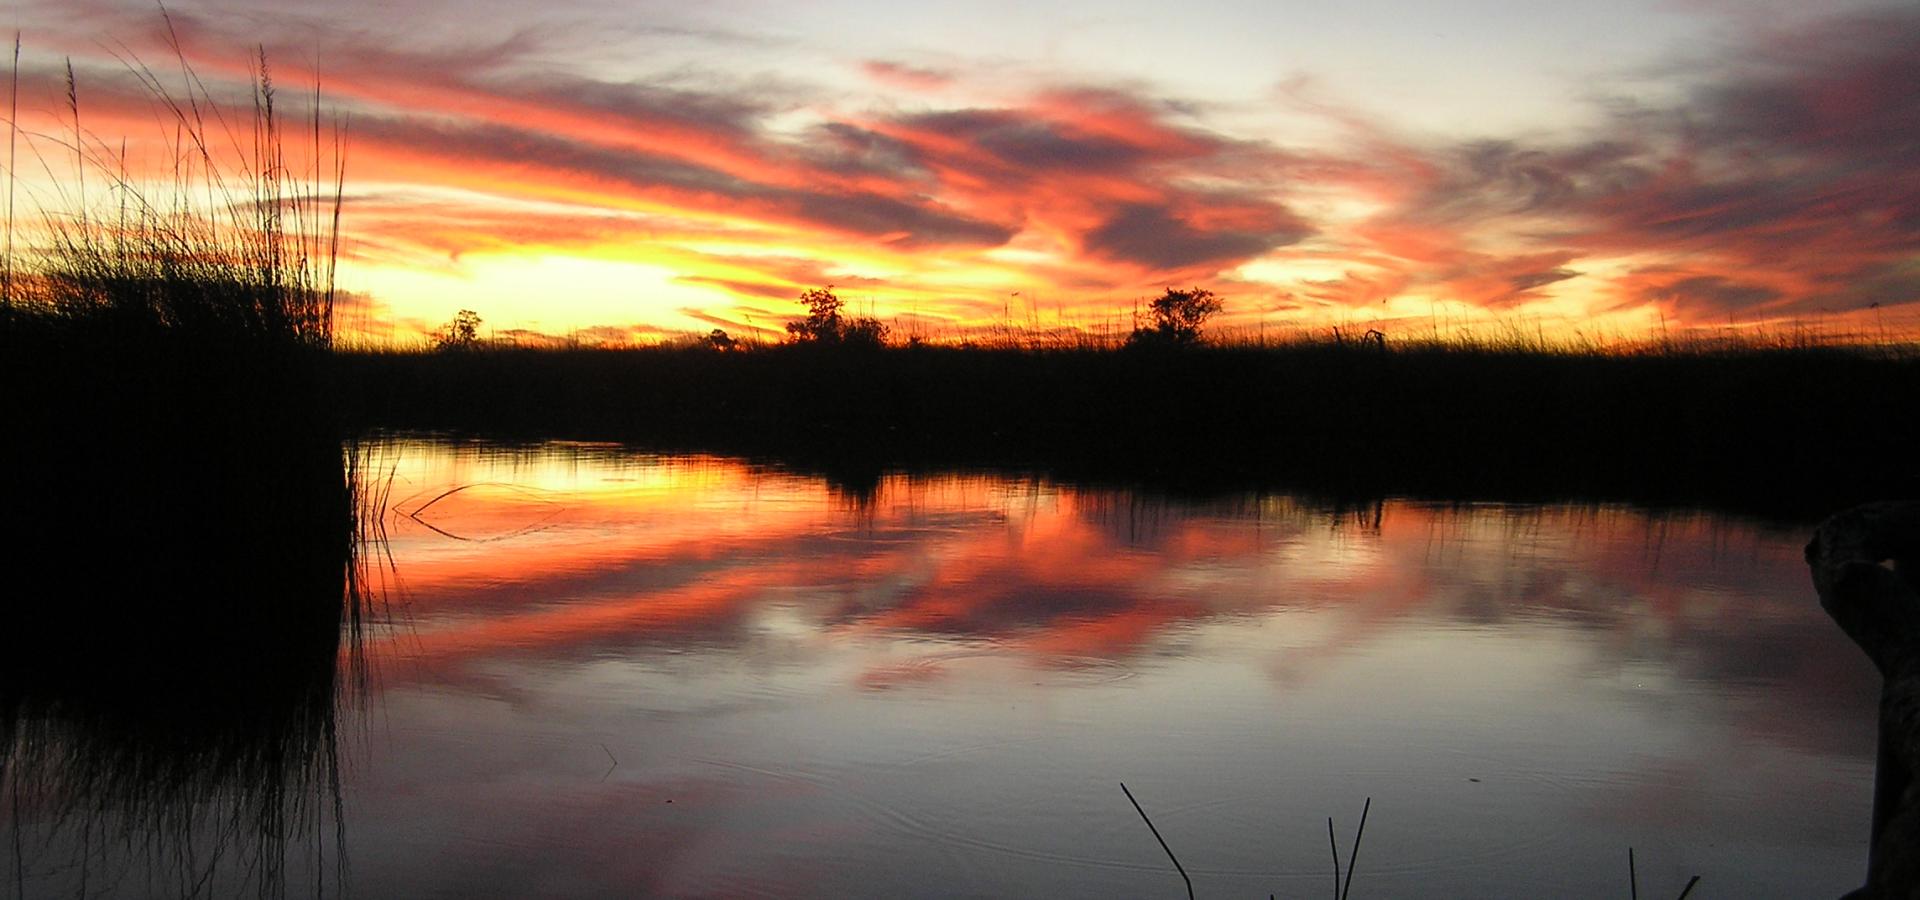 Erleben Sie atemberaubende Sonnenuntergänge im Okavango Delta in Botswana